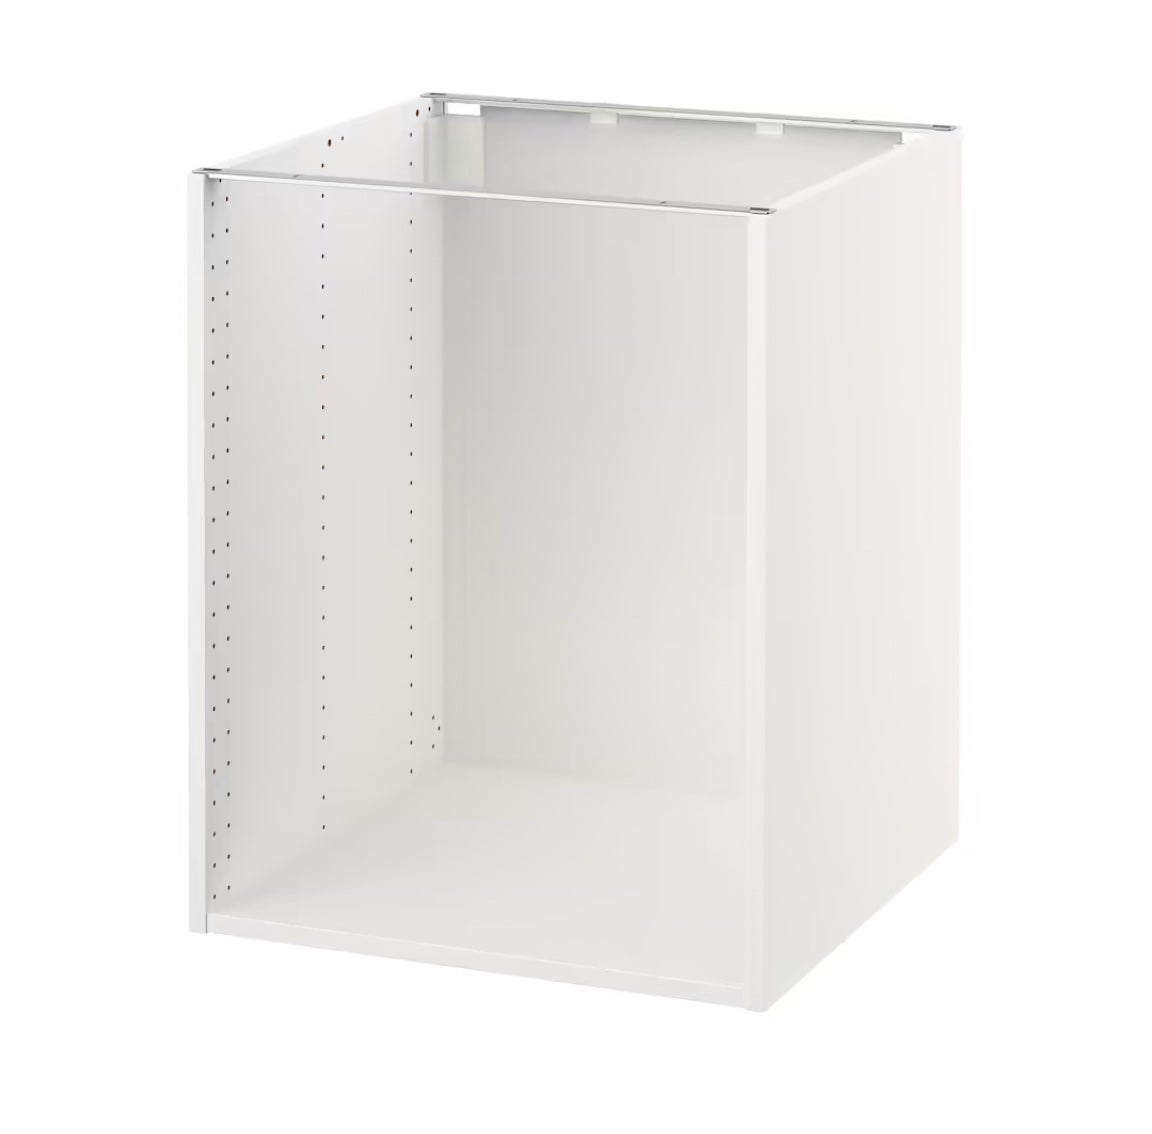 This $9 IKEA Hack Instantly Upgrades Basic Floating Shelves